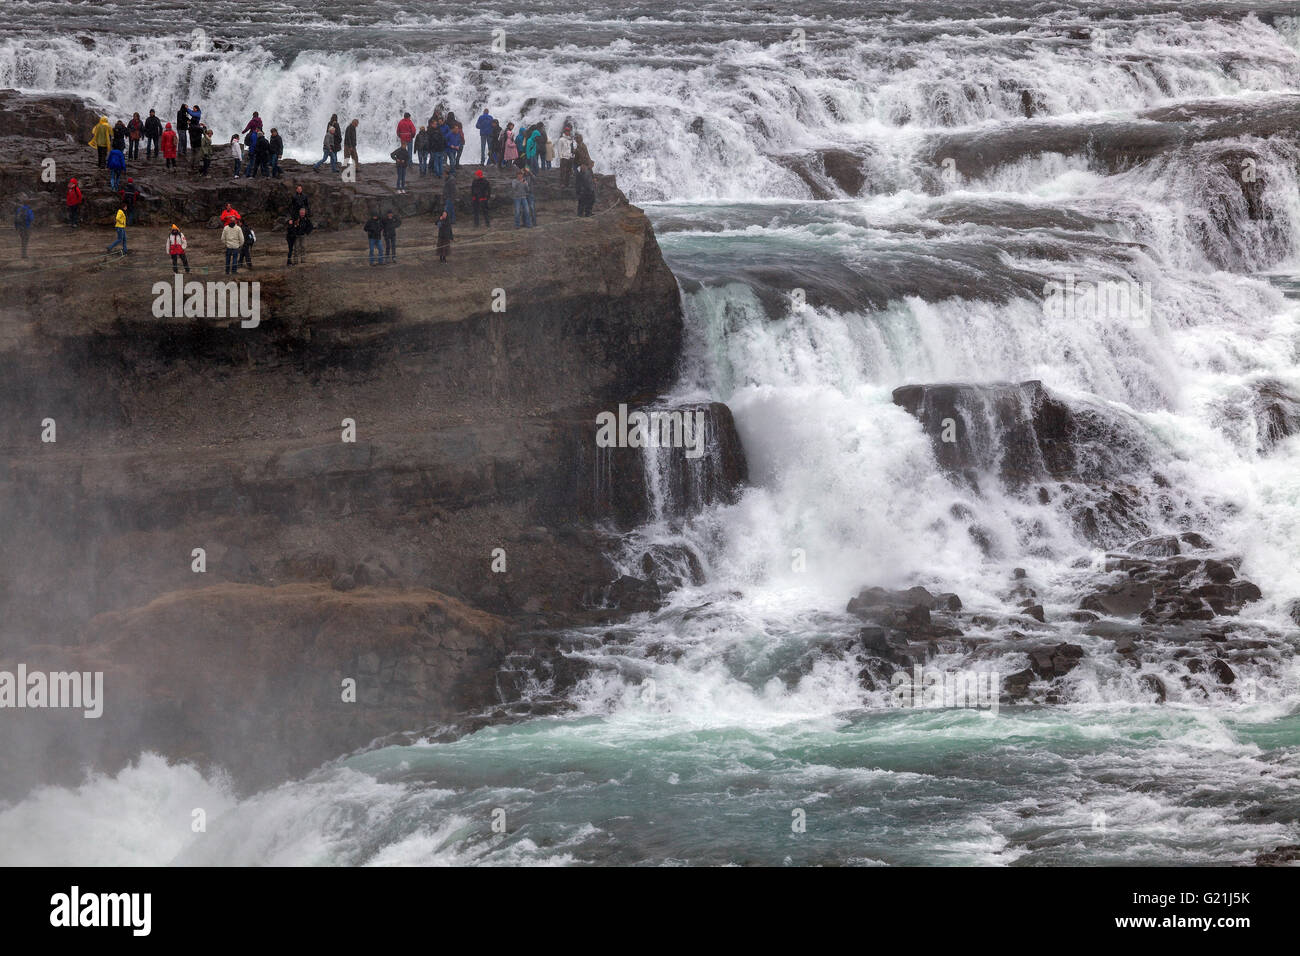 La cascata di Gullfoss, attrazioni turistiche, Golden Circle Route, Islanda Foto Stock